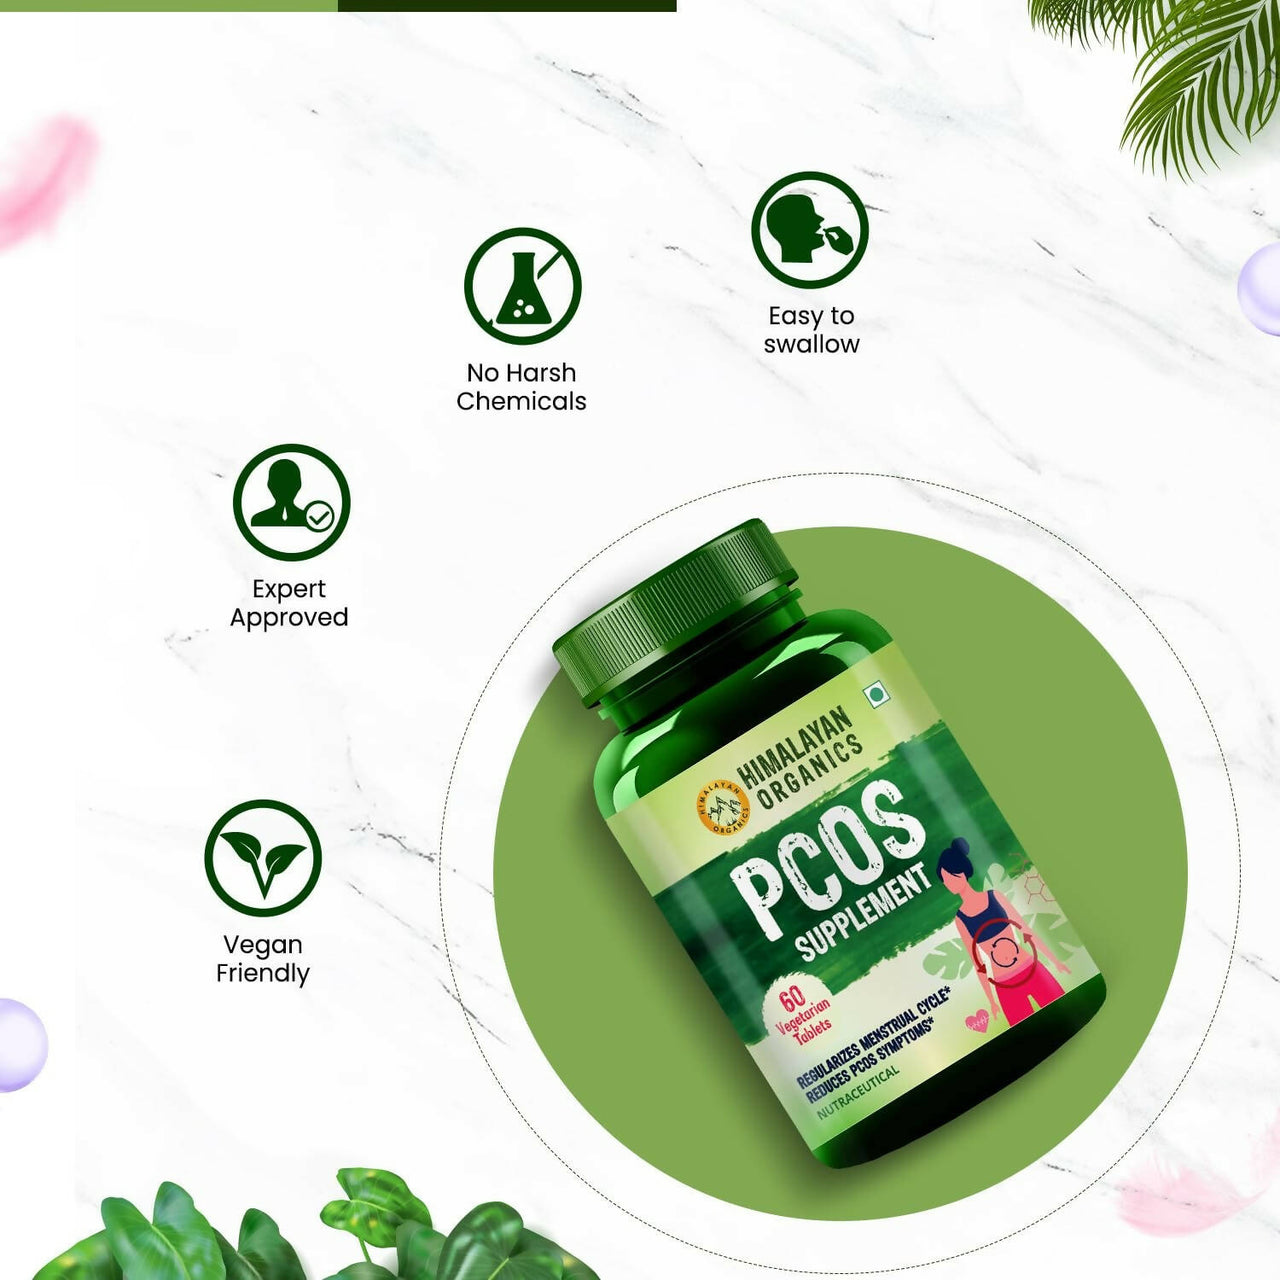 Himalayan Organics Pcos Supplement Tablets - Distacart